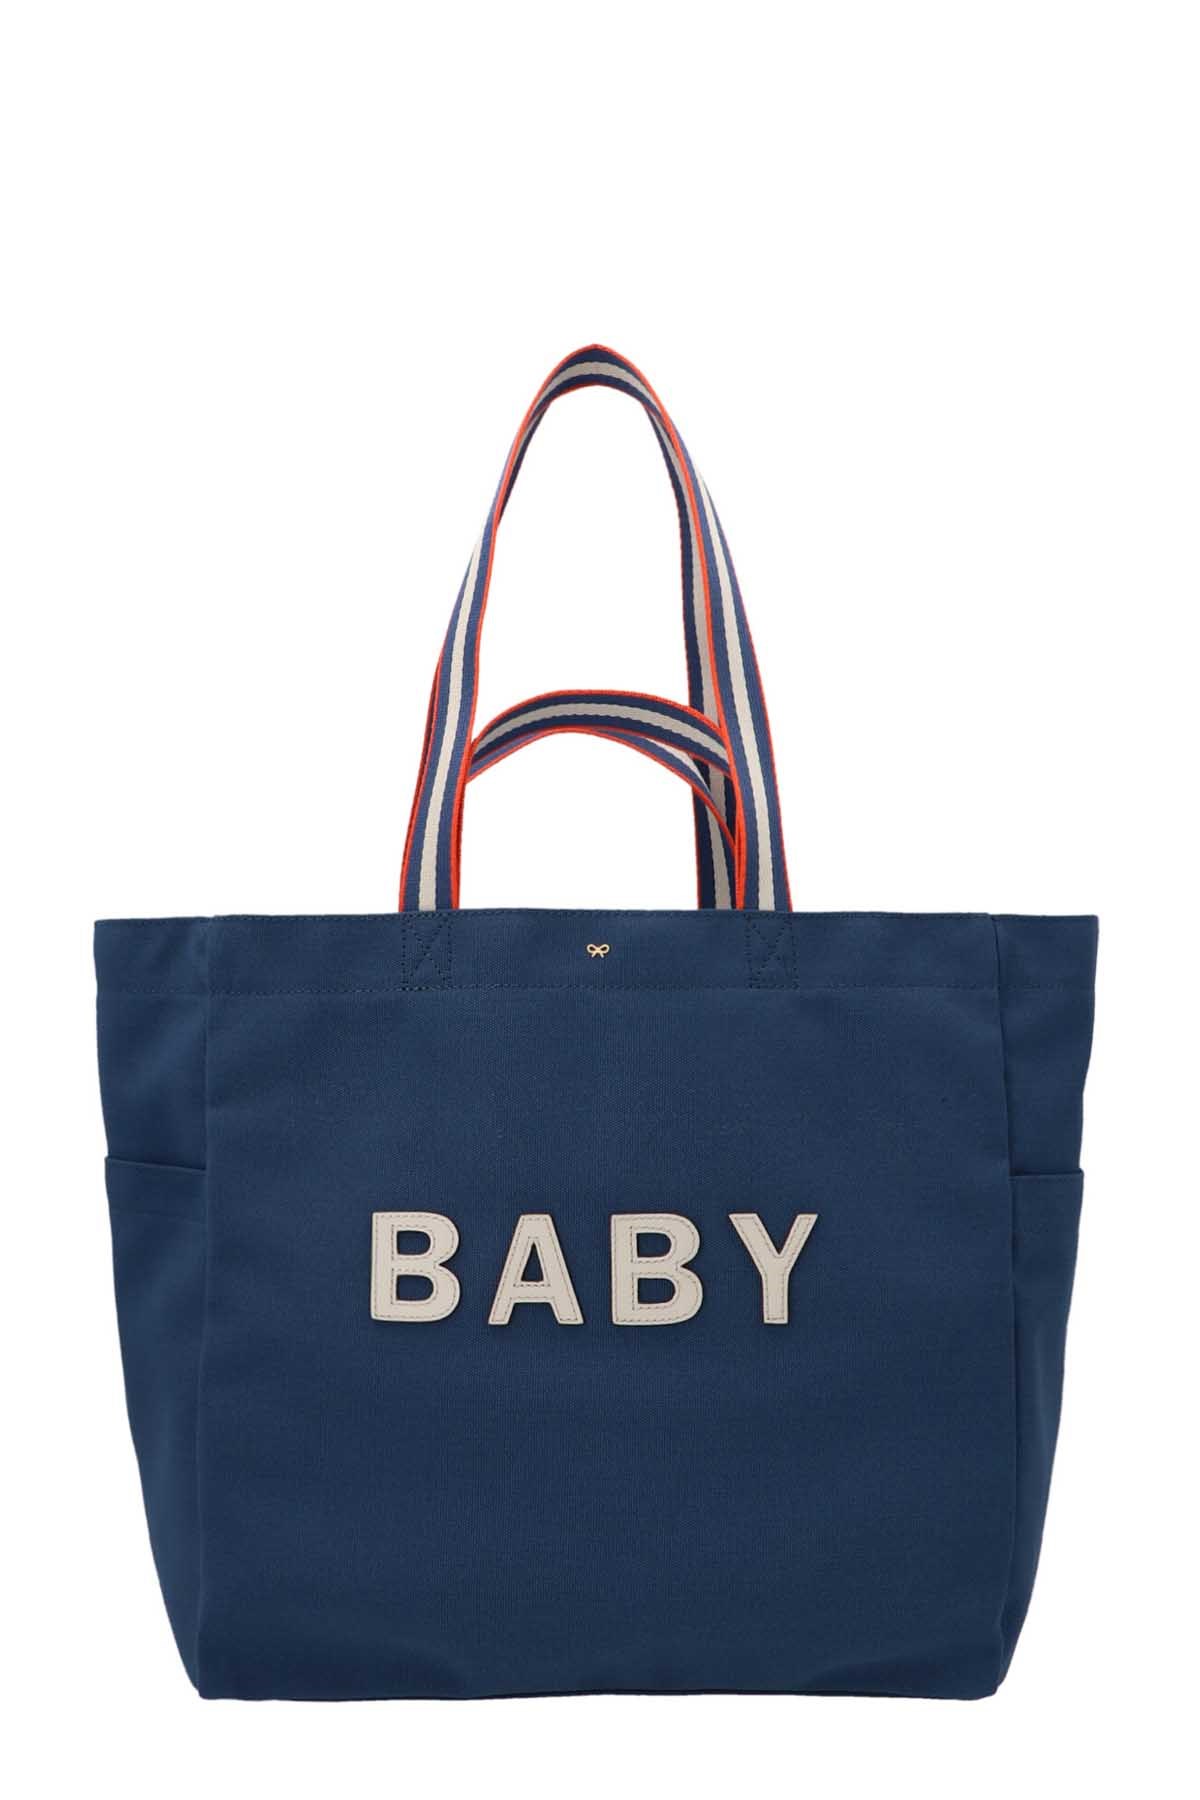 ANYA HINDMARCH 'Baby' Shopping Bag